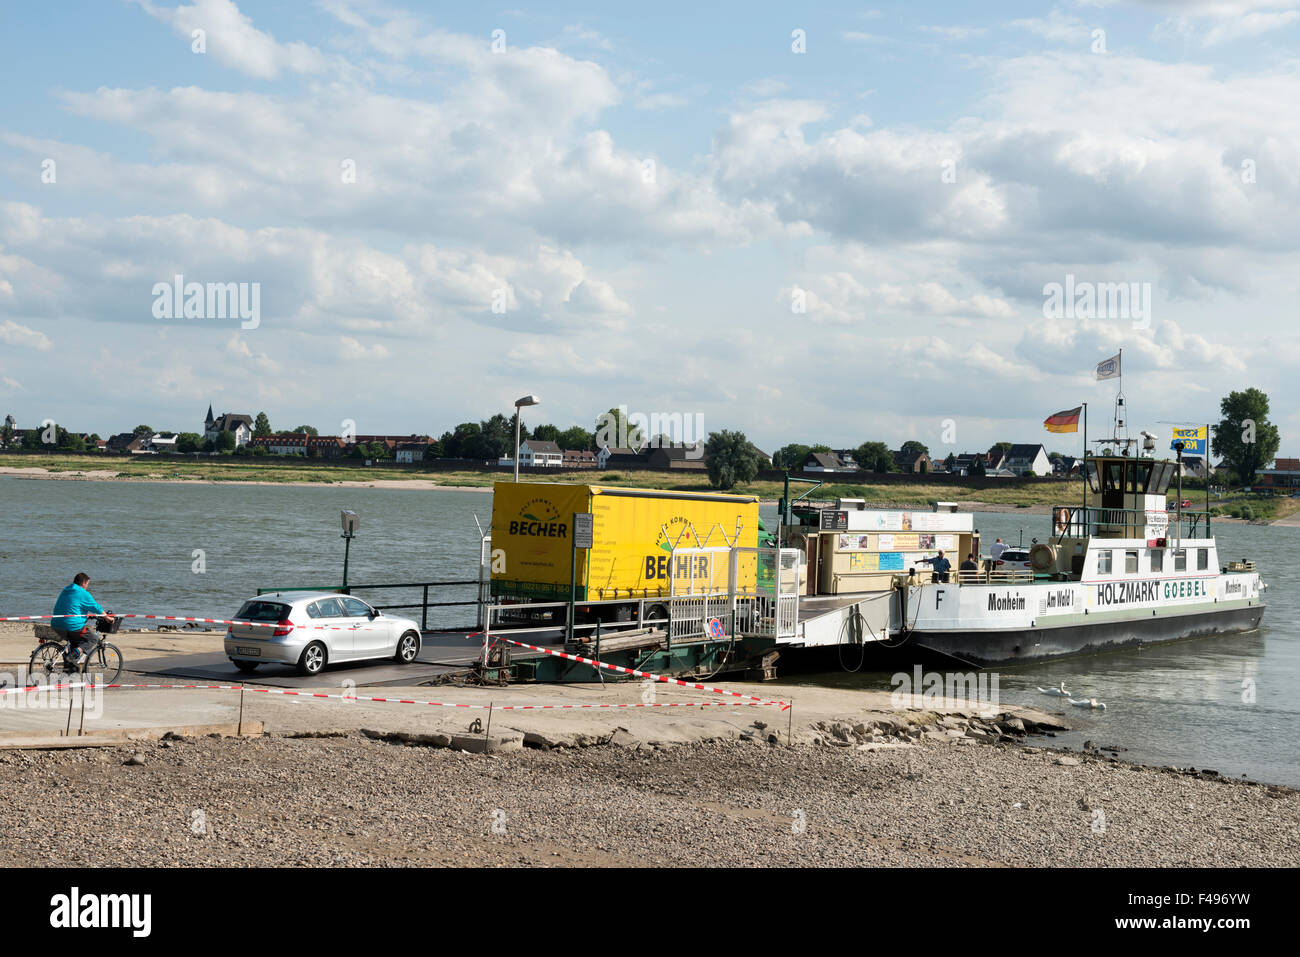 A Monheim Cologne-Langel di trasporto passeggeri e di traghetto sul fiume Reno Germania, Hitdorf, Germania. Foto Stock